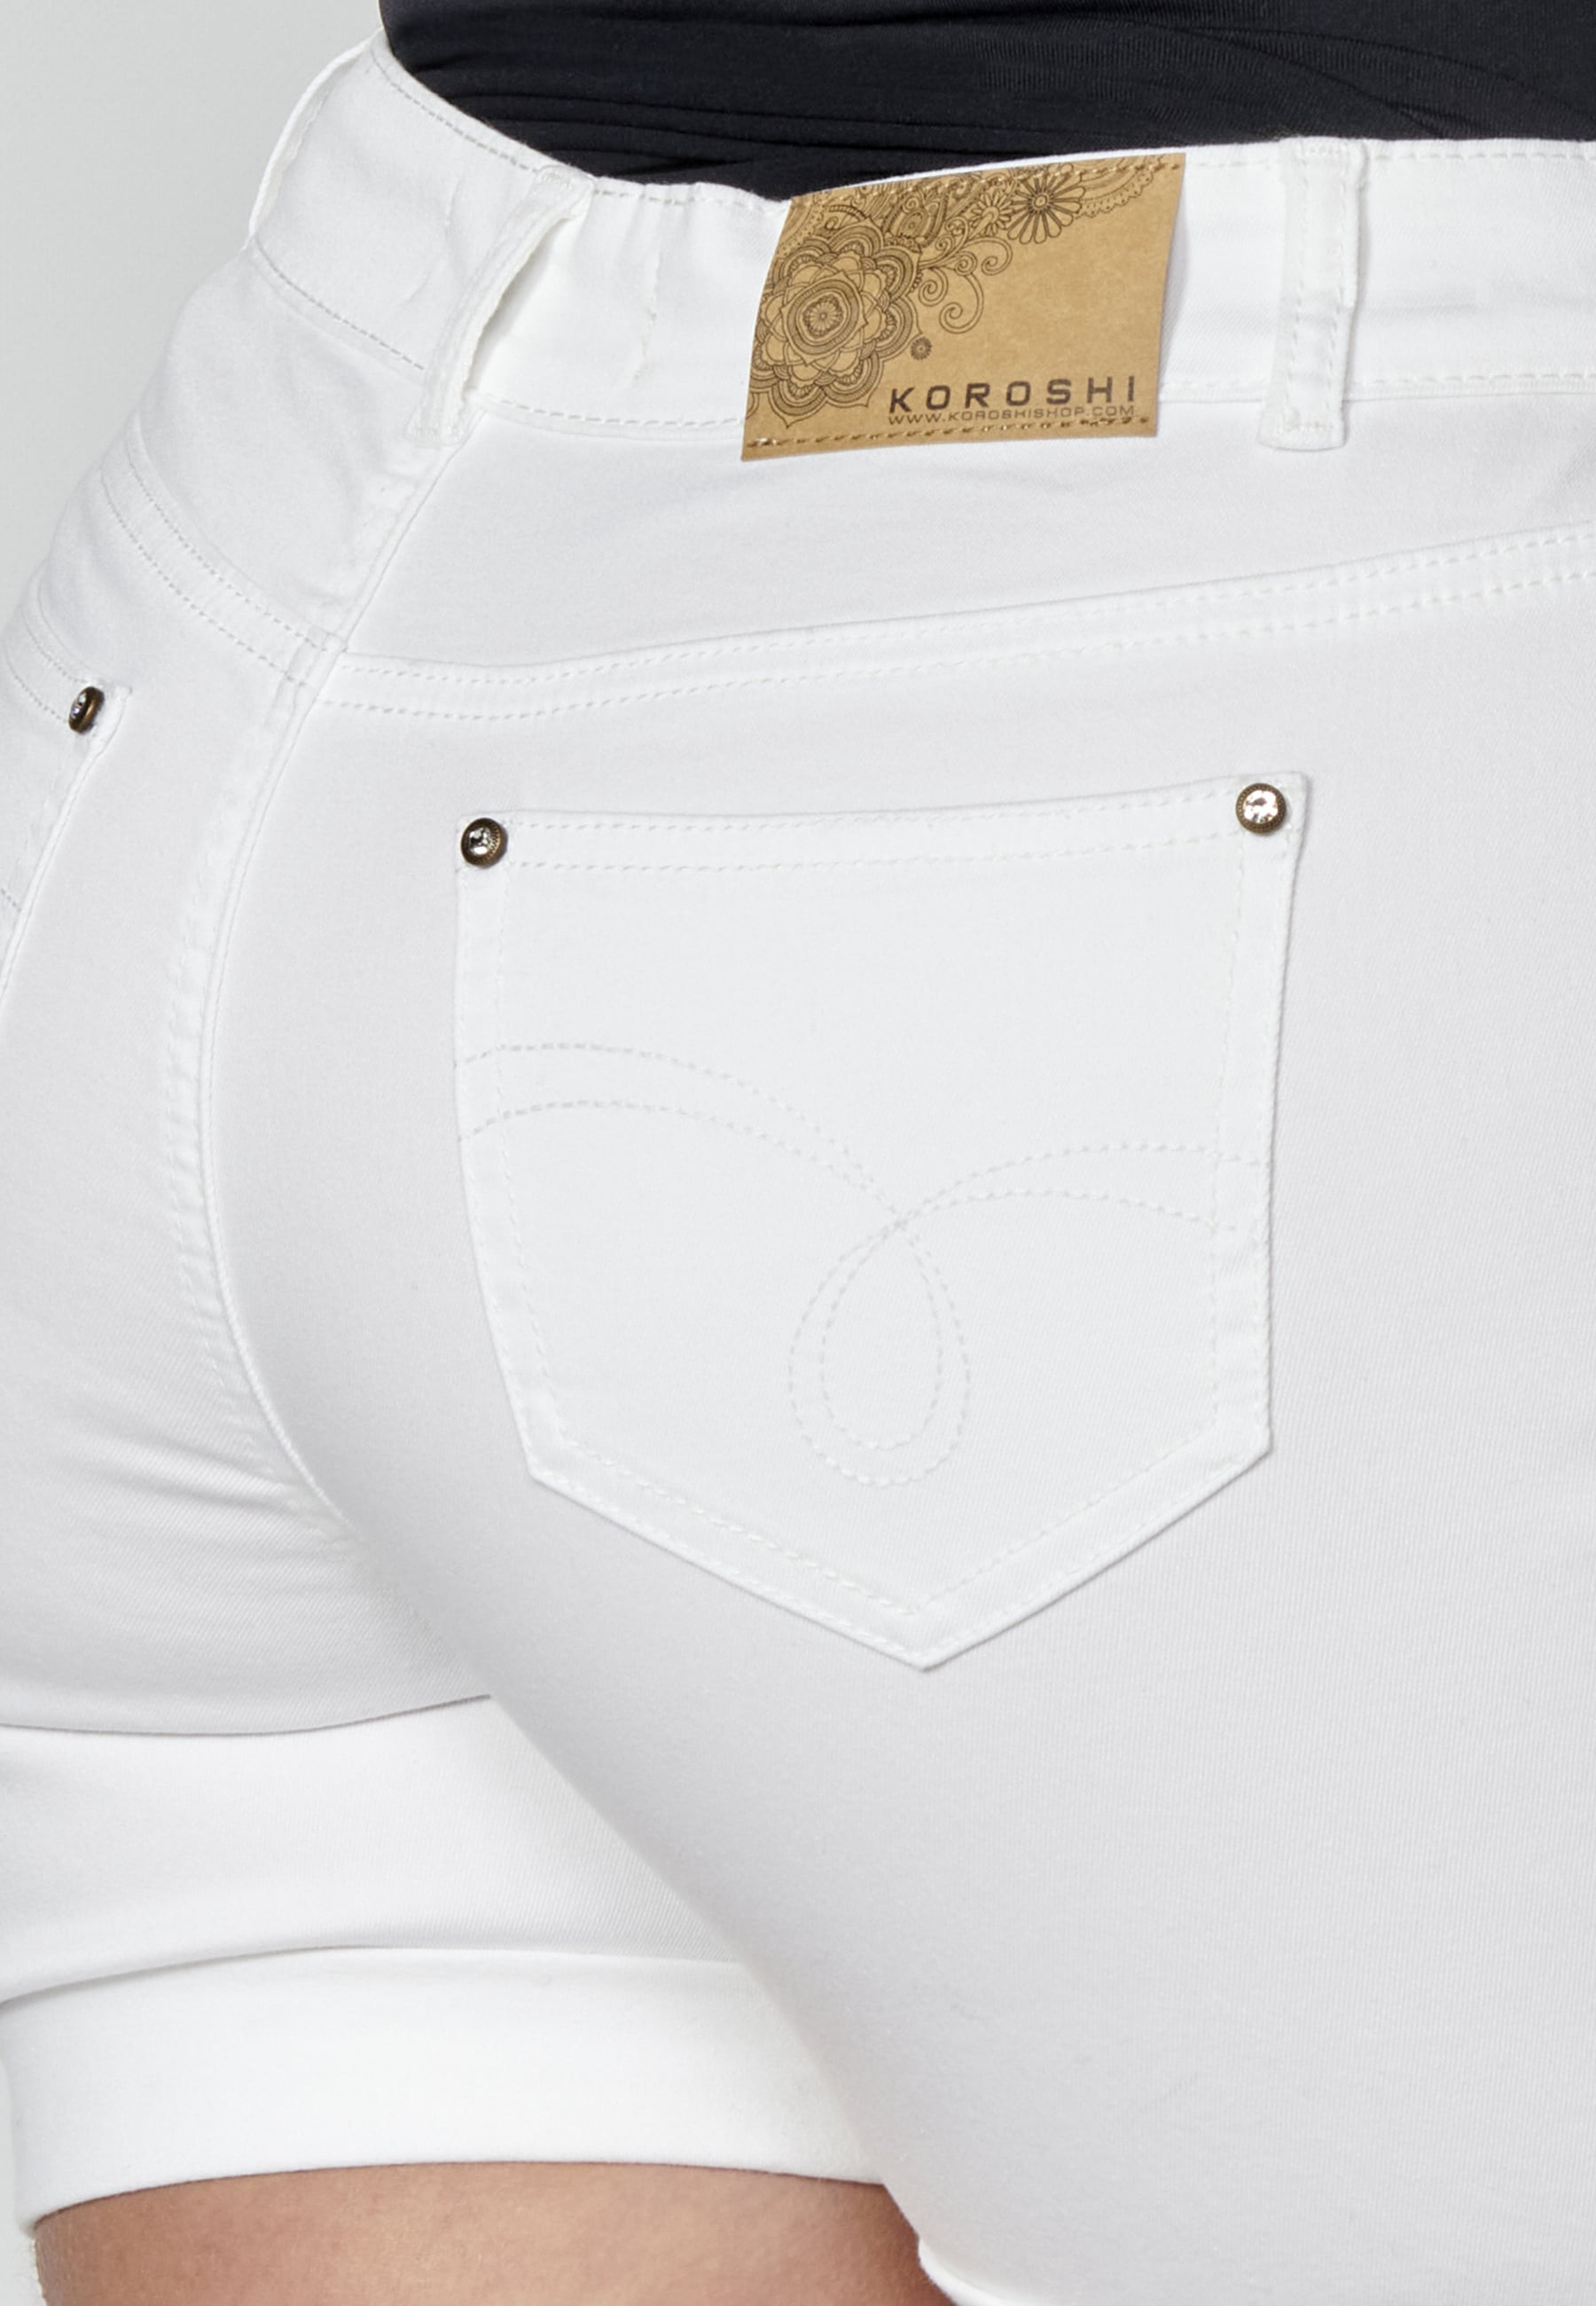 Pantalons curts short amb detalls florals color Blanc per a Dona